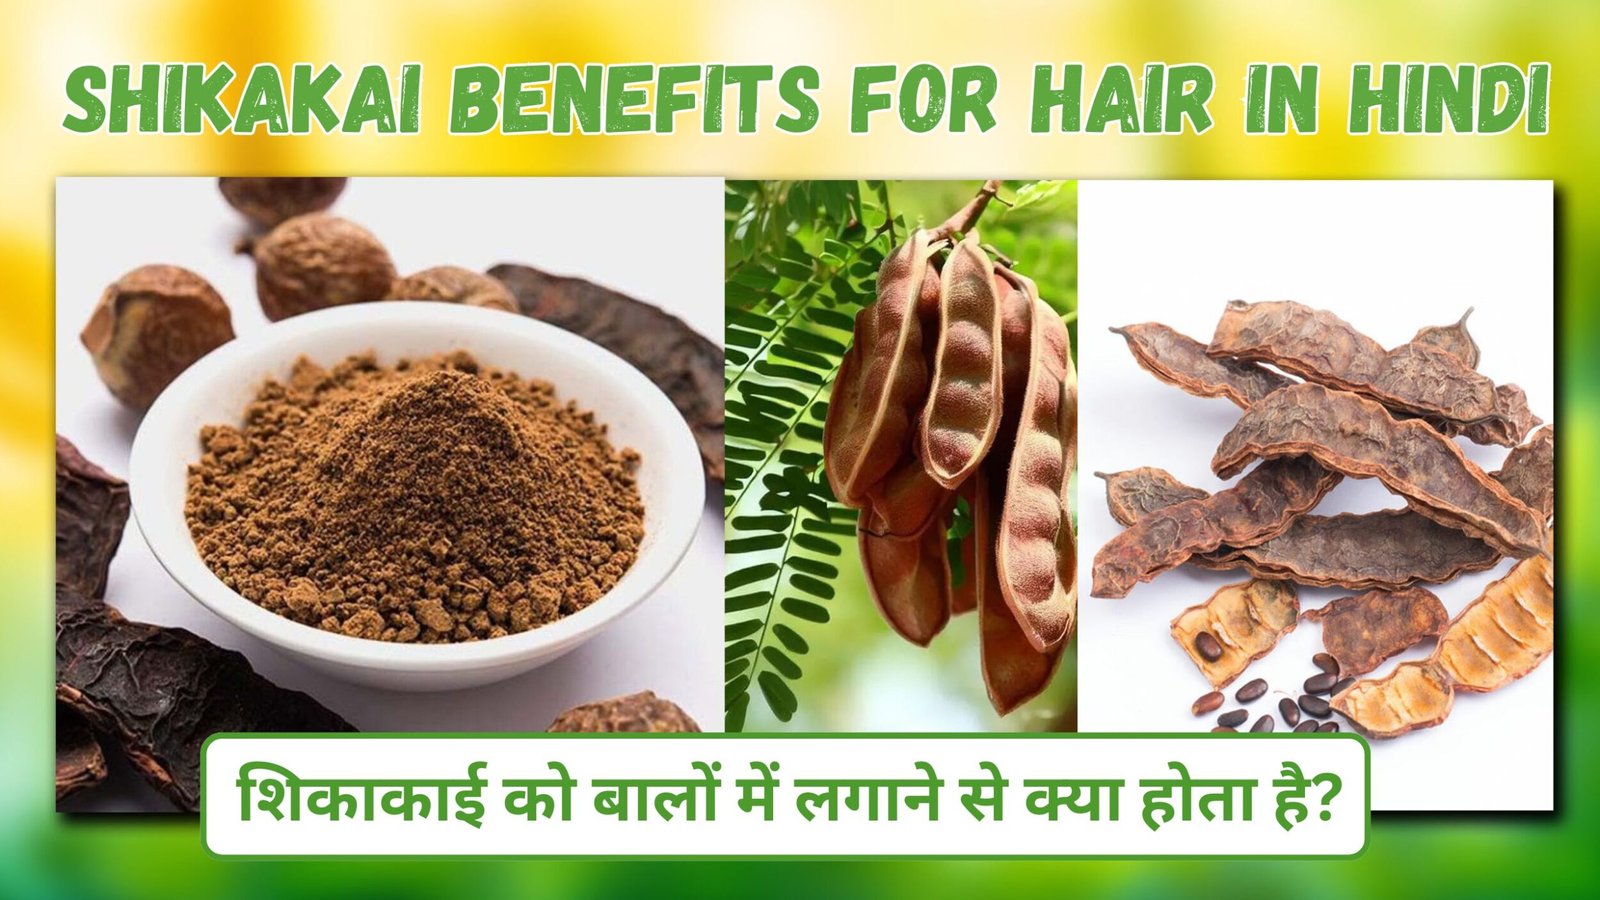 Shikakai benefits for hair in hindi | शिकाकाई को बालों में लगाने से क्या होता है?